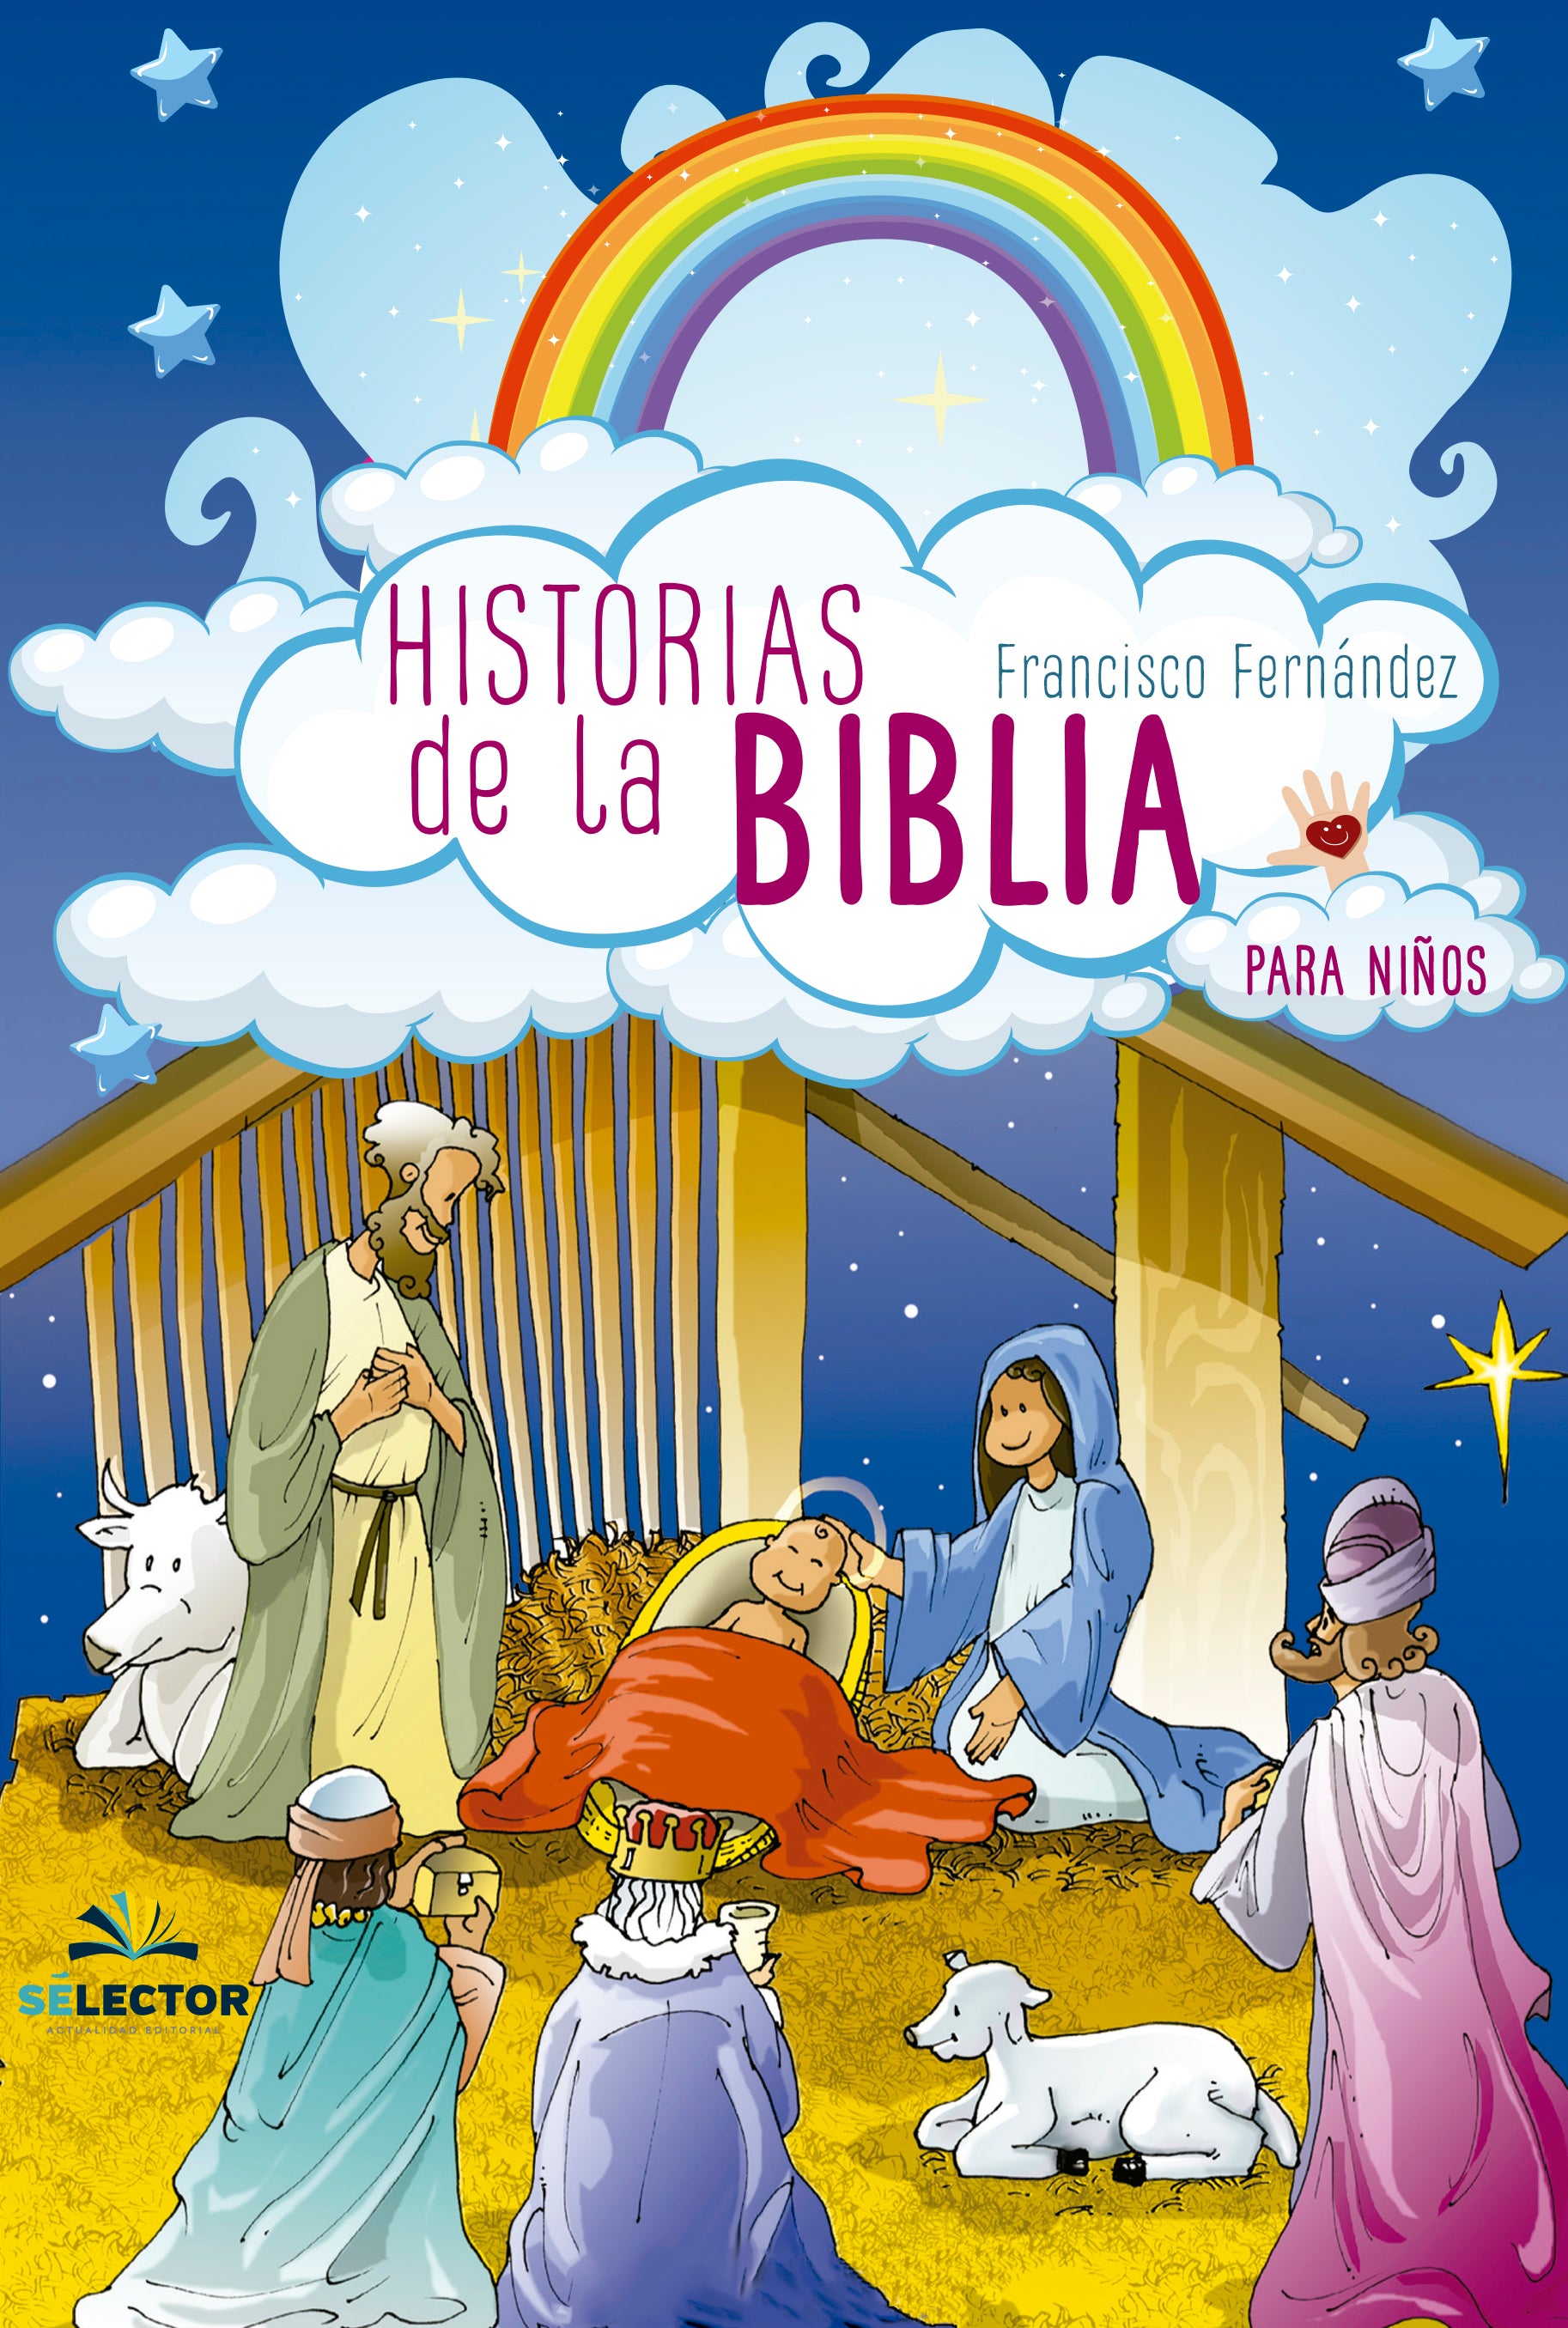 La Biblia para Niños